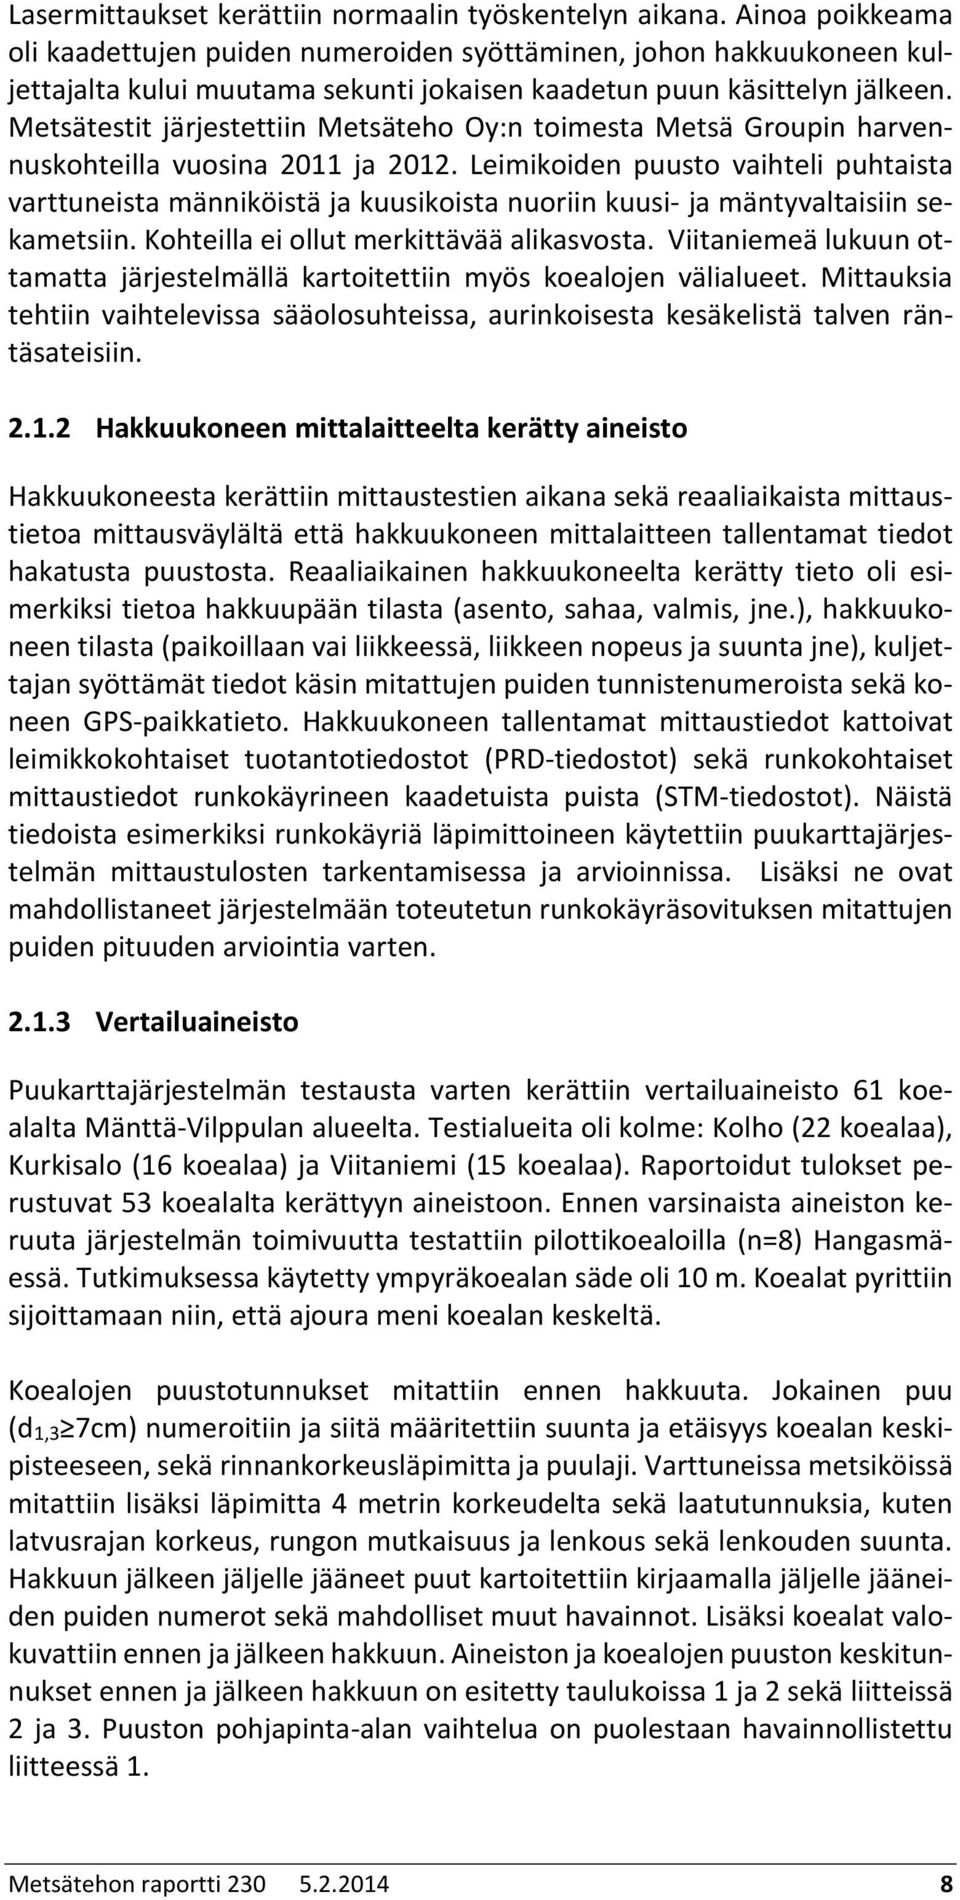 Metsätestit järjestettiin Metsäteho Oy:n toimesta Metsä Groupin harvennuskohteilla vuosina 2011 ja 2012.